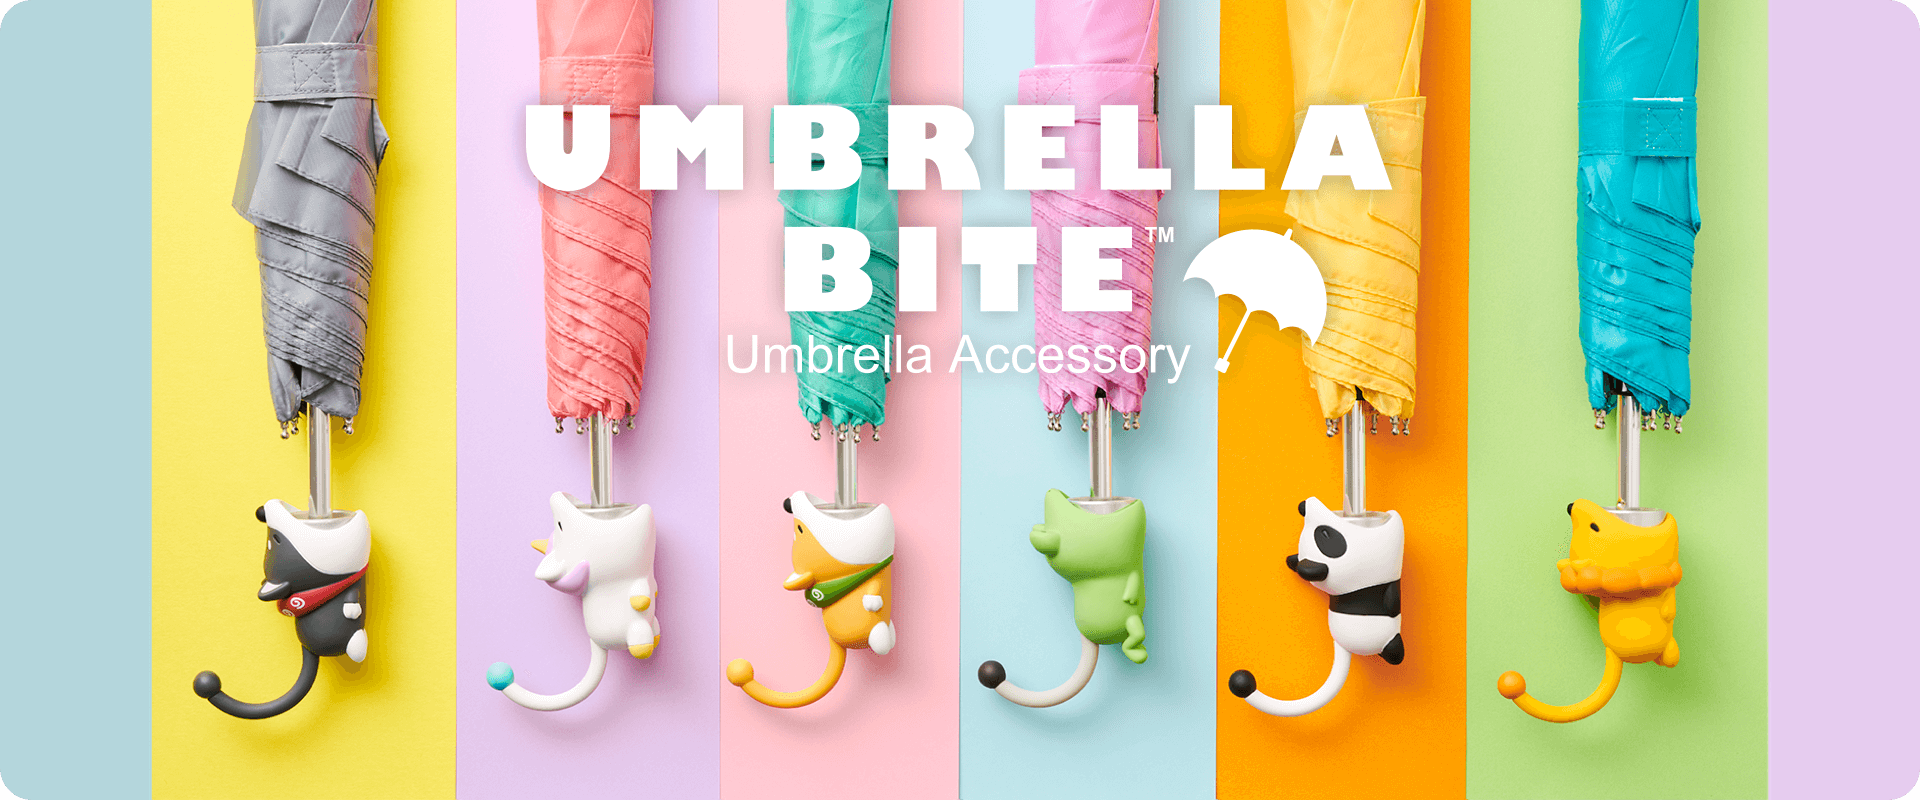 あなたの傘をかわいく もっと便利に Umbrella Bite アンブレラバイト 株式会社ドリームズ Dreams Inc